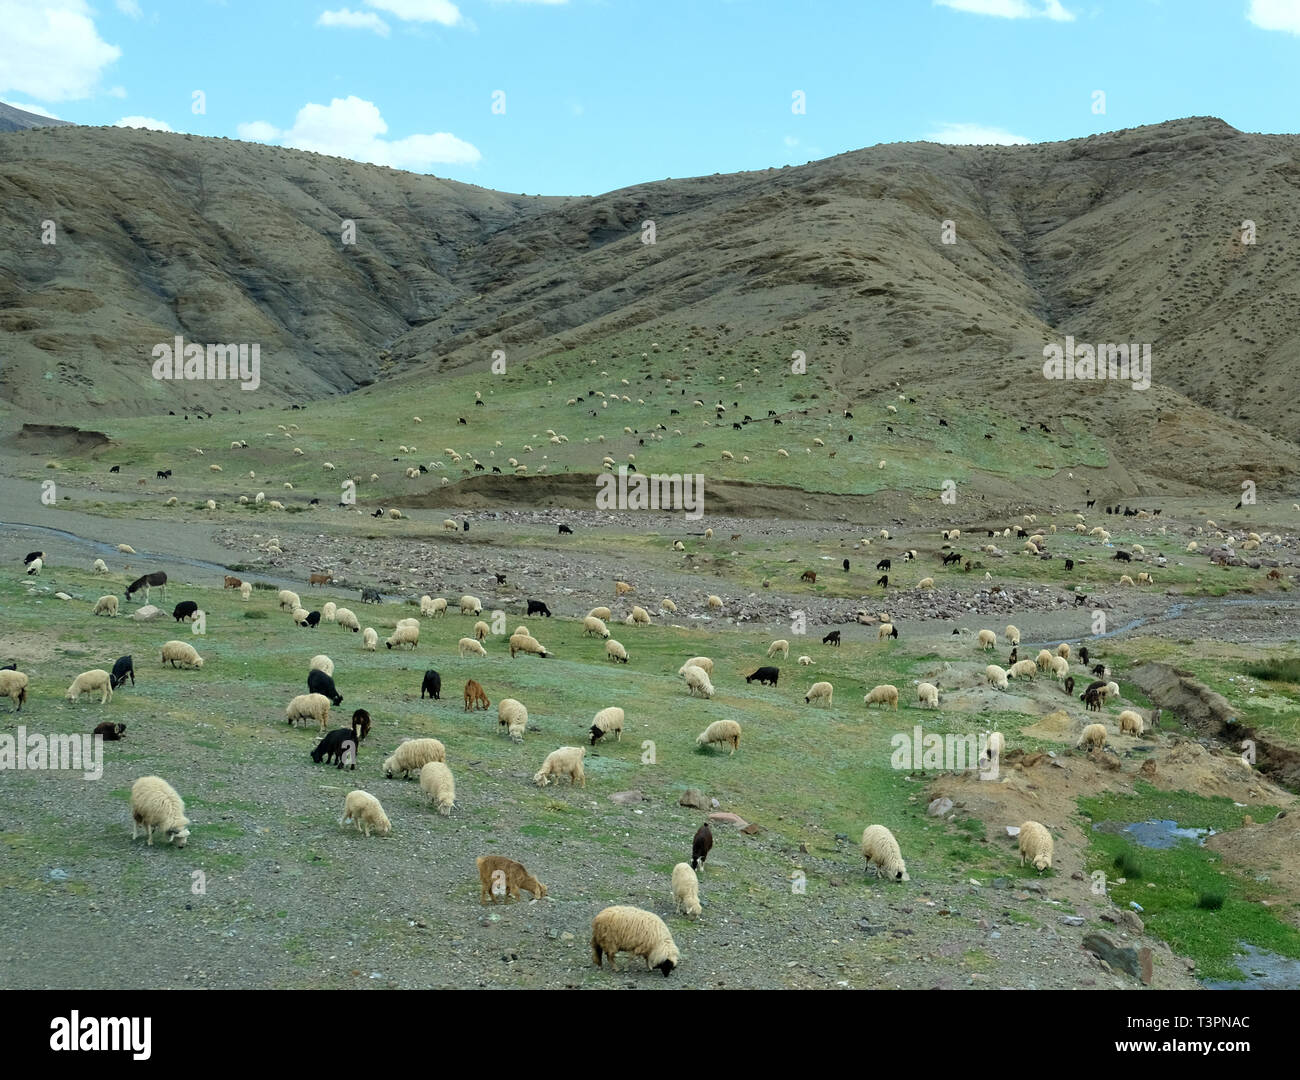 Bianco, nero e marrone di ovini e caprini che pascolano in contrafforti e dalle pianure alle montagne dell'Atlante in Marocco Foto Stock